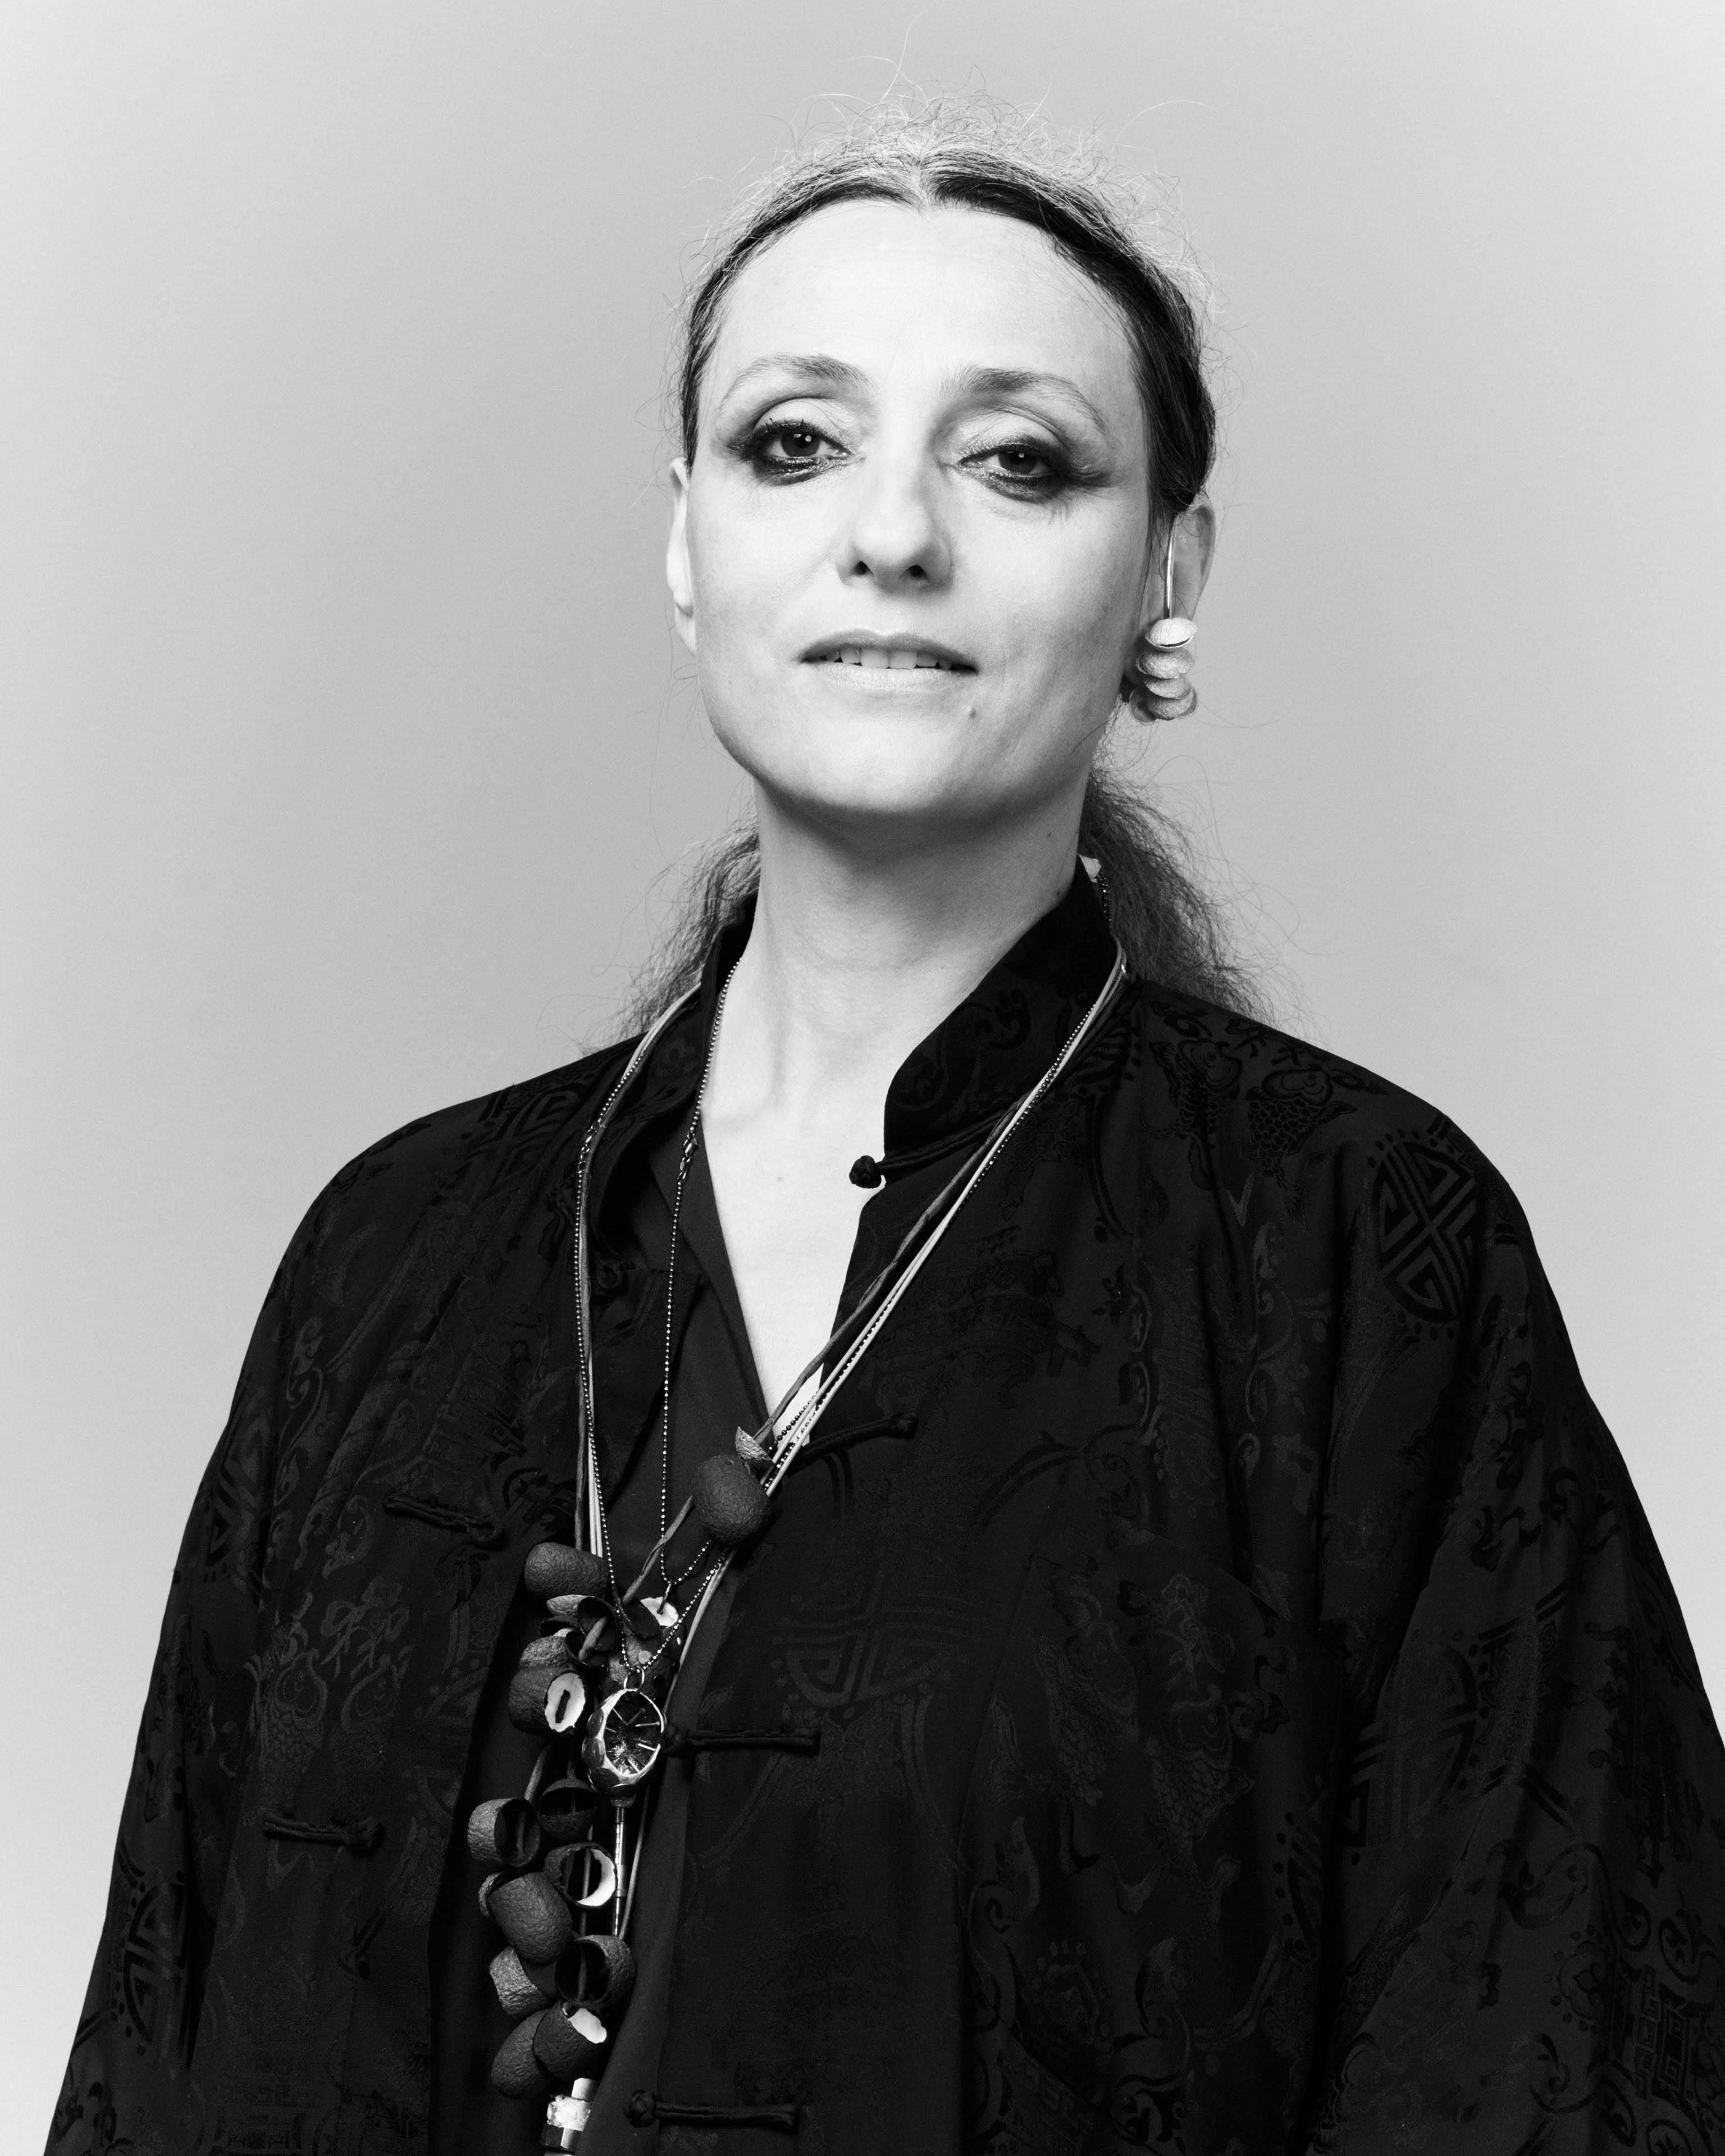 Künstlerin Maja Vukoje trägt mehrere Seidenkokon-Halsketten über einer schwarzen Bluse, ein Ohrring mit weißen Kokonteilen hängt an ihrem Ohr, sie schaut ernst, ihr langes Haar ist hochgebunden